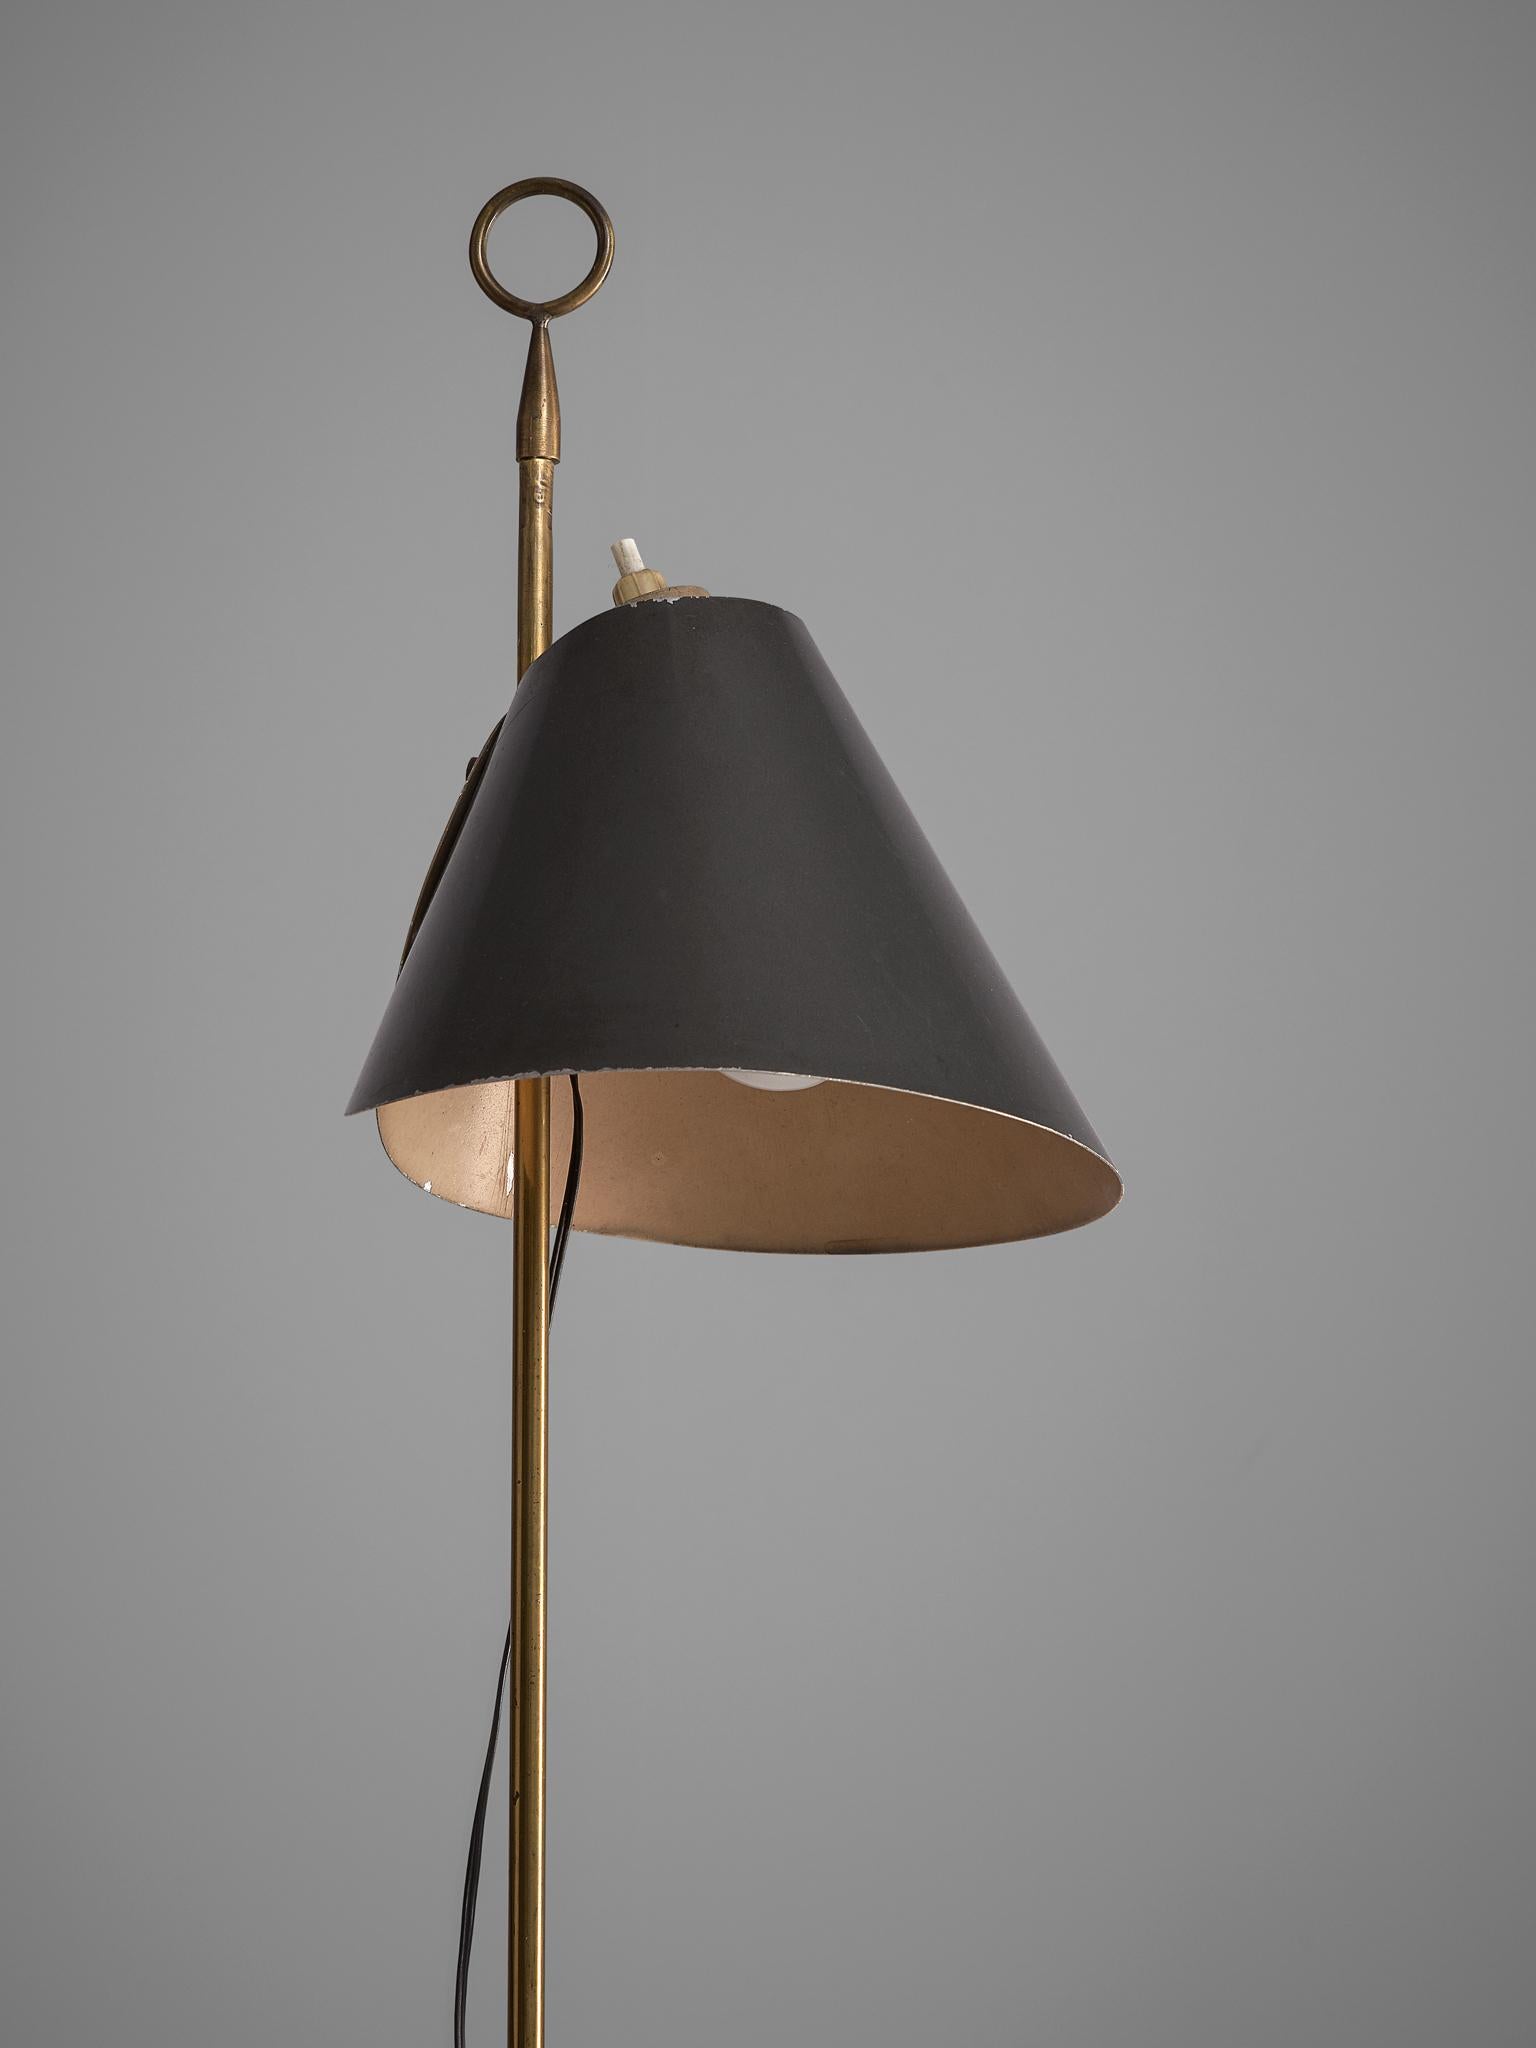 Mid-20th Century Floor Lamp Model Monachella by Luigi Caccia Dominioni, Italy, 1950s